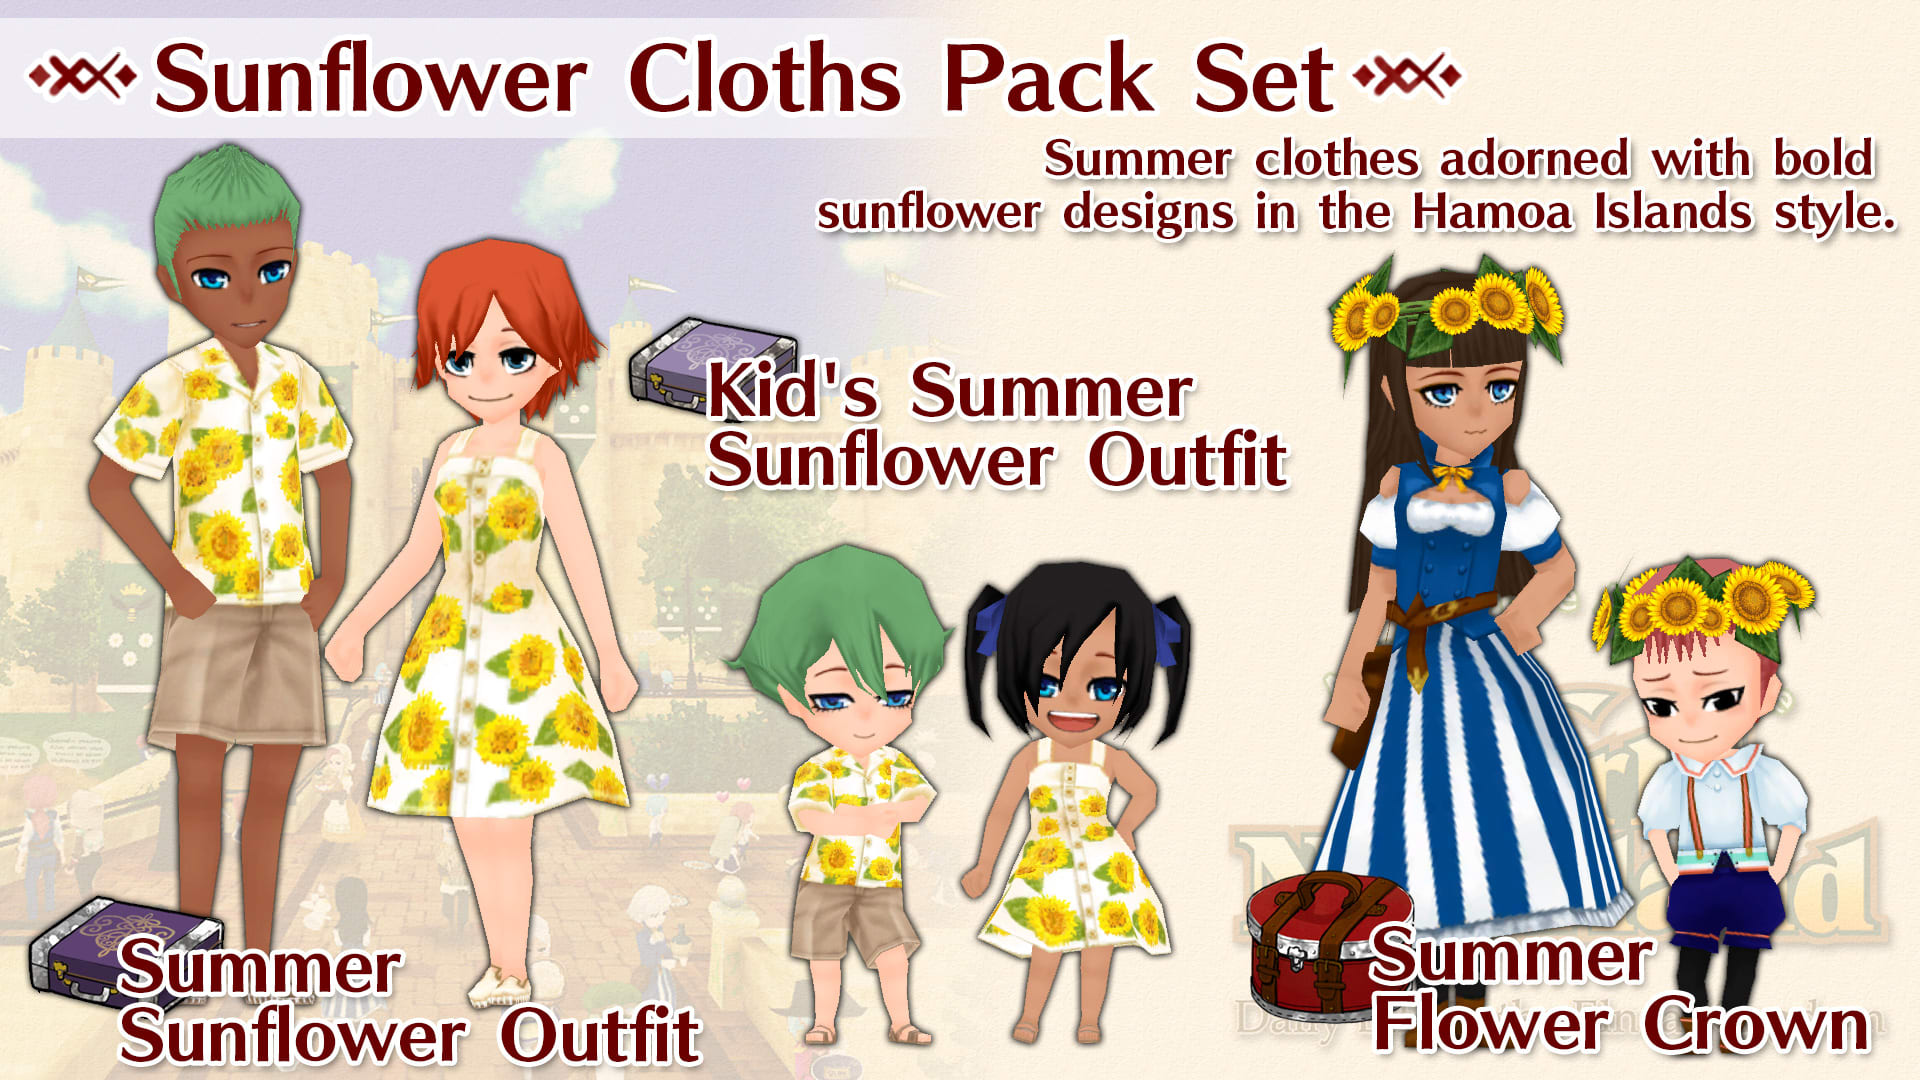 Sunflower Cloths Pack Set